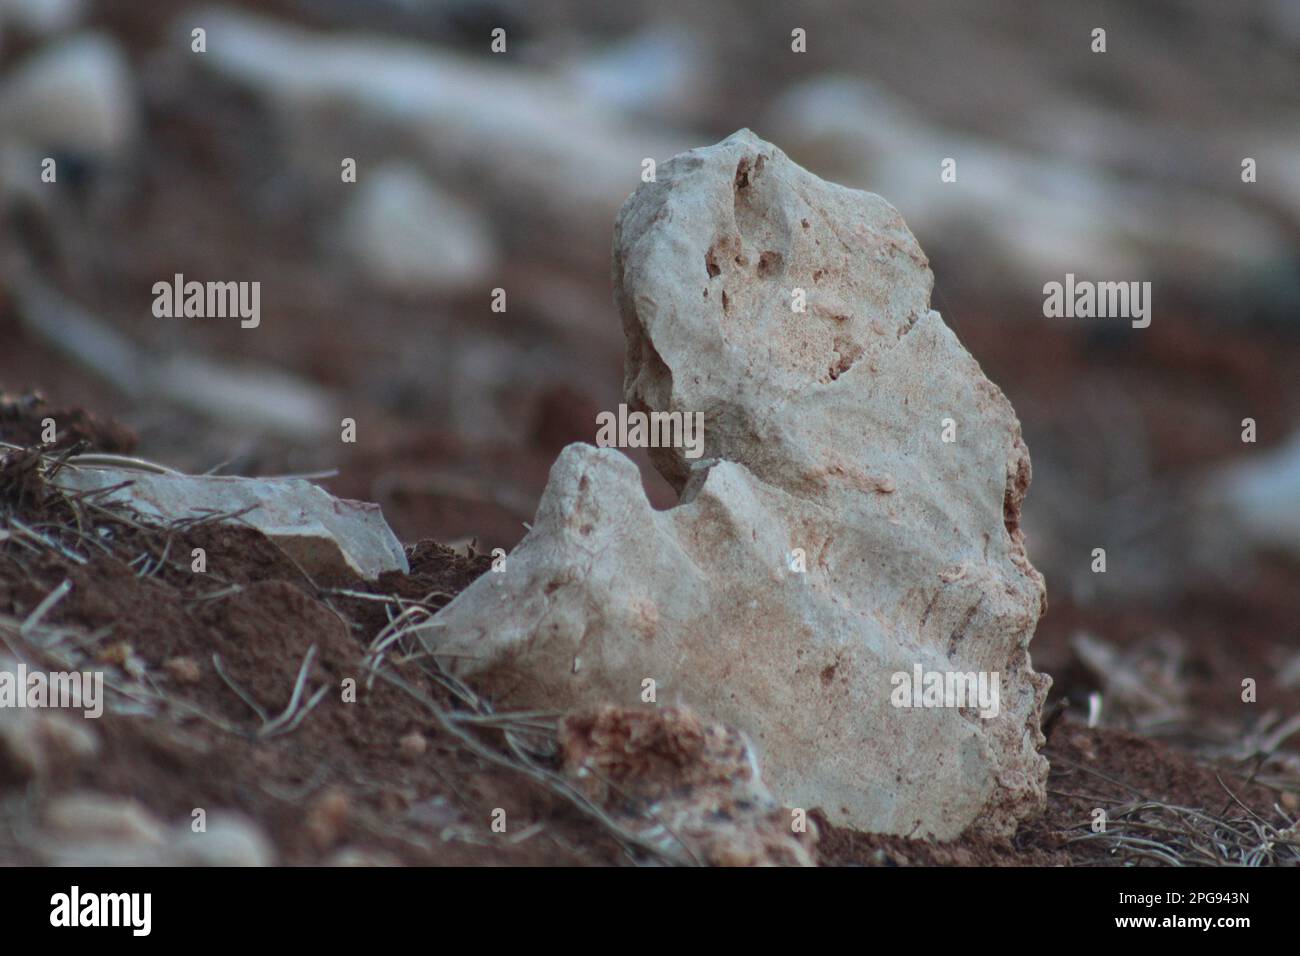 Ein kleiner Navajo-Sandstein, der aus dem Boden ragt. Kleinere Kieselsteine und flache Steine liegen um ihn herum. Stockfoto